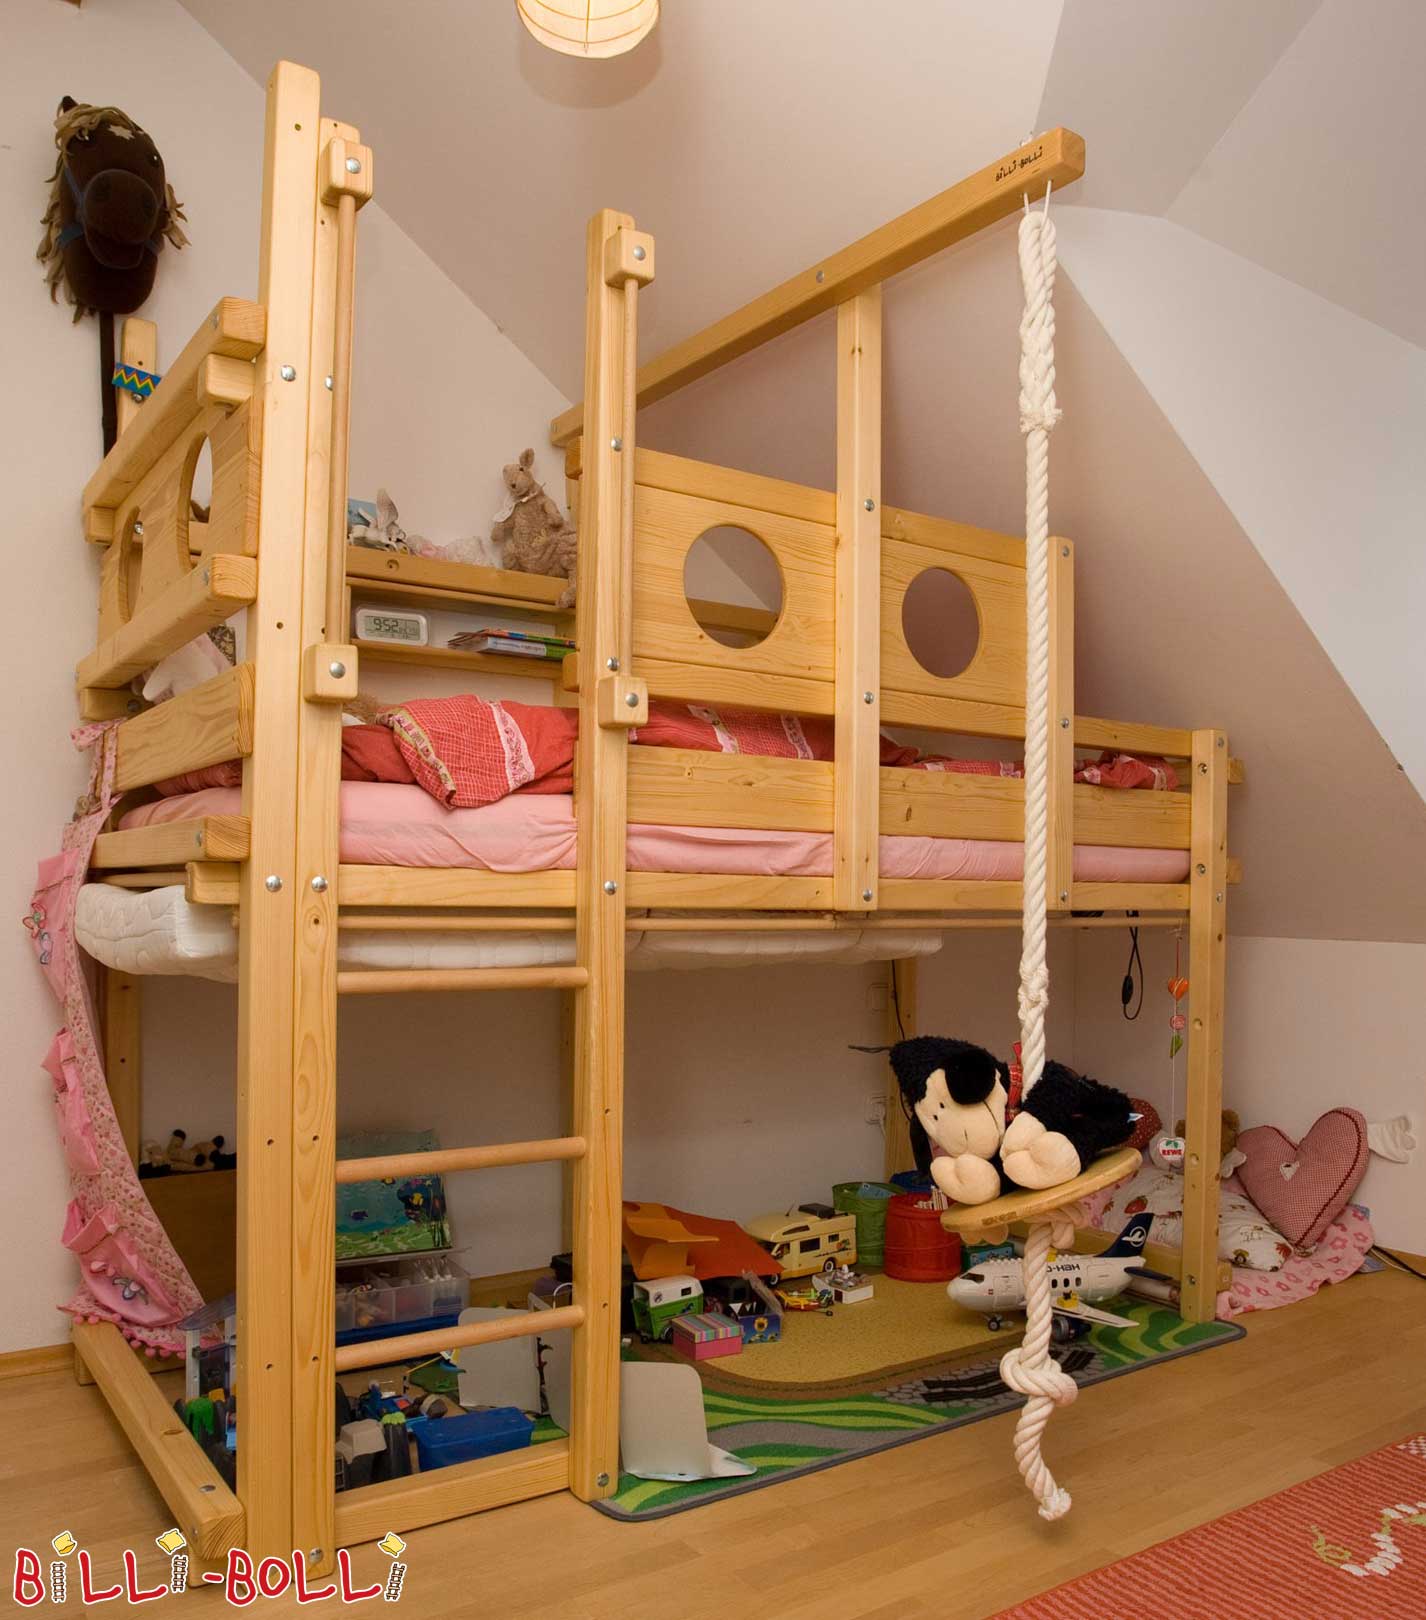 Κρεβάτι σοφίτας που μεγαλώνει με το παιδί με κεκλιμένο σκαλοπάτι οροφής, λαδωμένη-κερωμένη ερυθρελάτη (Κατηγορία: Χρησιμοποιείται κρεβάτι σοφίτας)